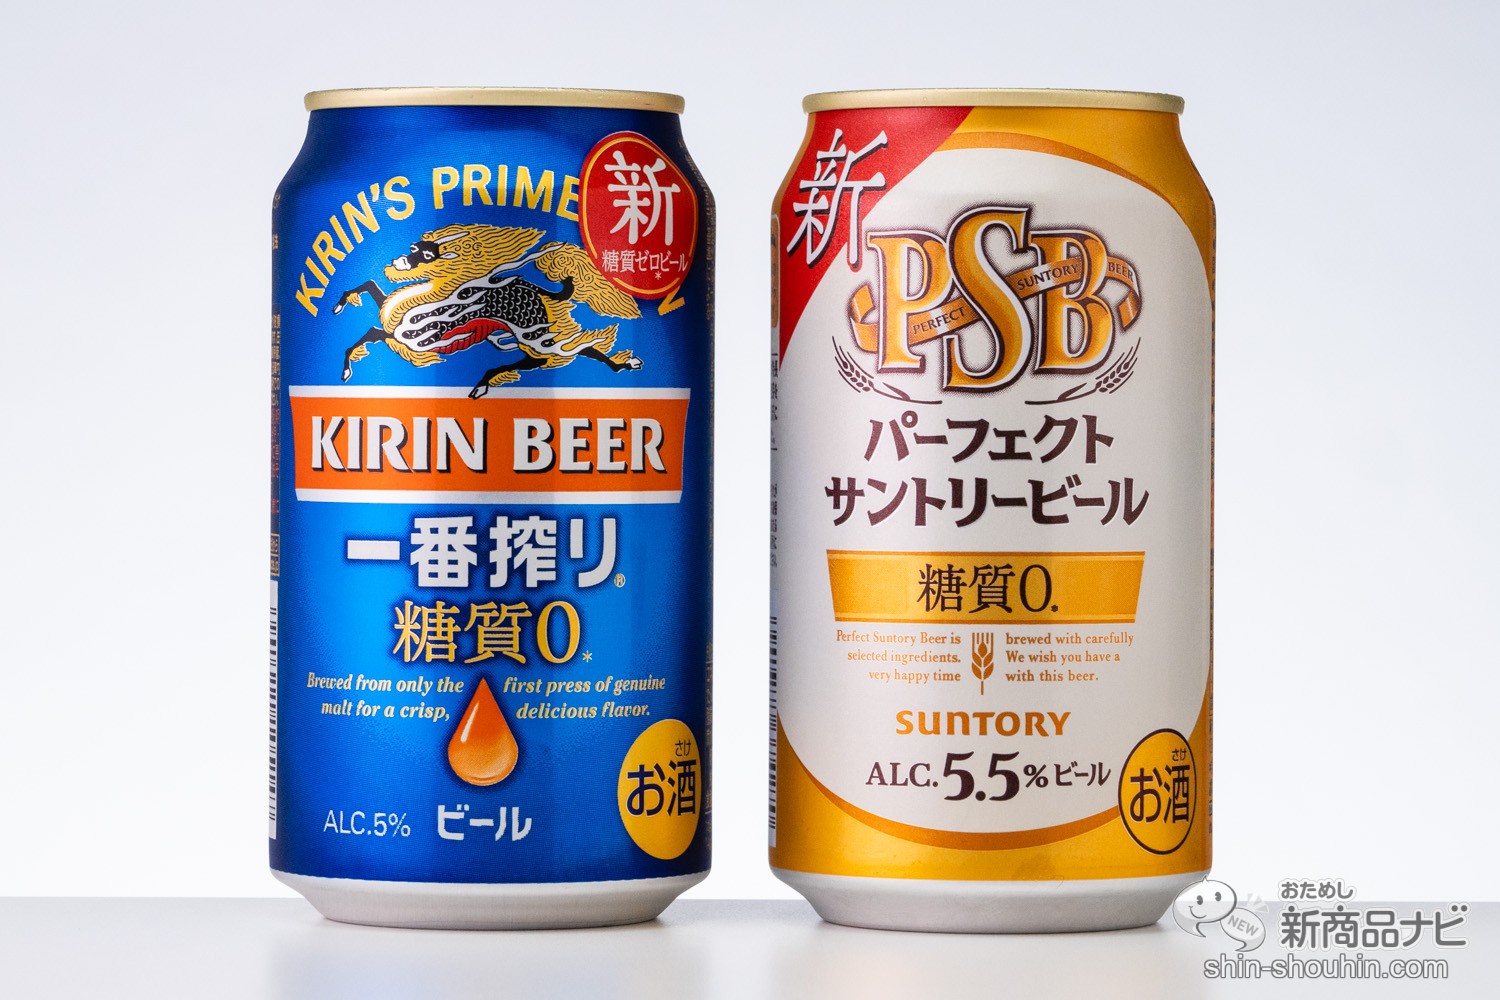 おためし新商品ナビ » Blog Archive » 【糖質ゼロビール対決】『キリン一番搾り 糖質ゼロ』vs『パーフェクトサントリービール』【飲み比べ】